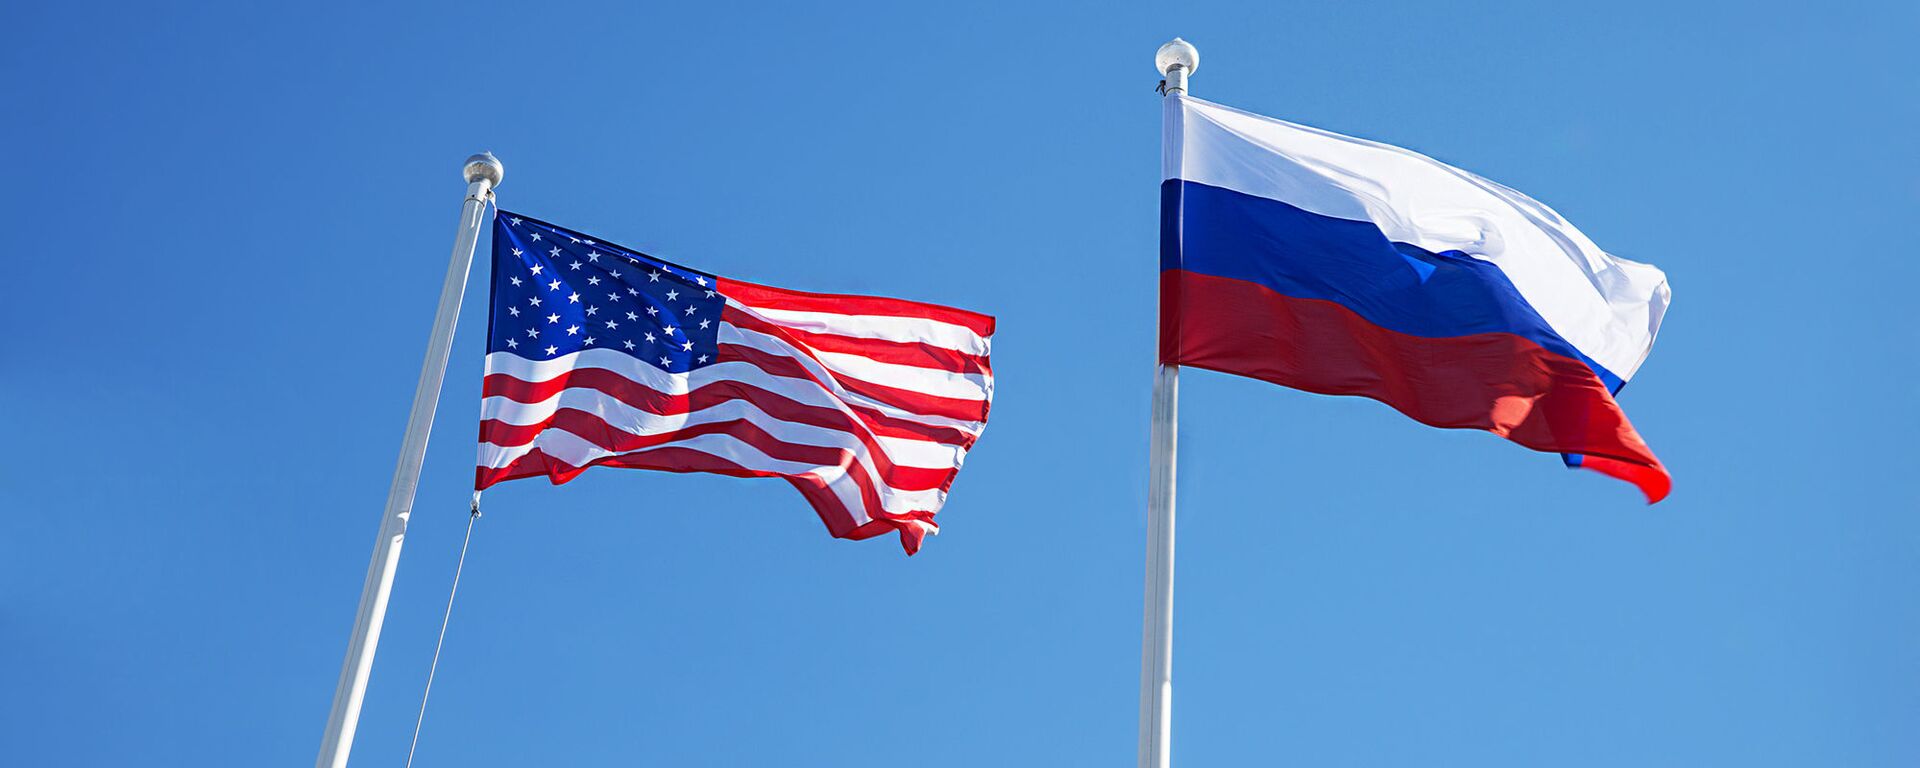 Американский и российский флаги - Sputnik Литва, 1920, 17.03.2021